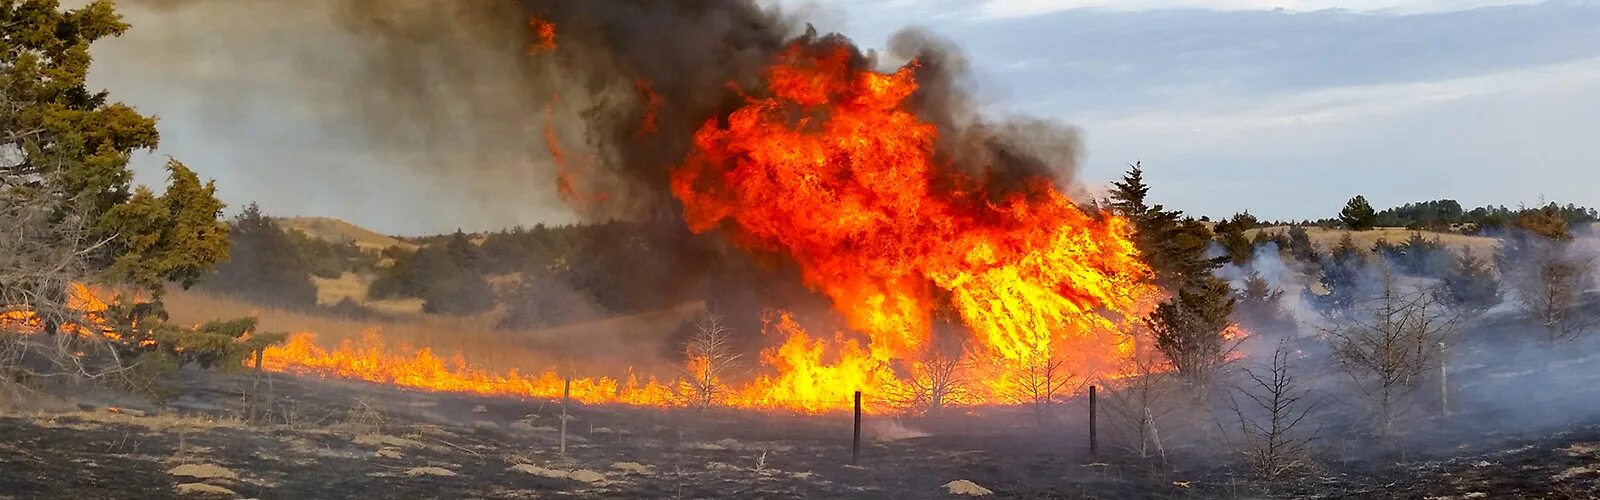 Ущерб от пожара третьим лицам. Экология пожары. Влияние пожаров на окружающую среду. Влияние лесных пожаров на почву. Воздействие пожара на почву.